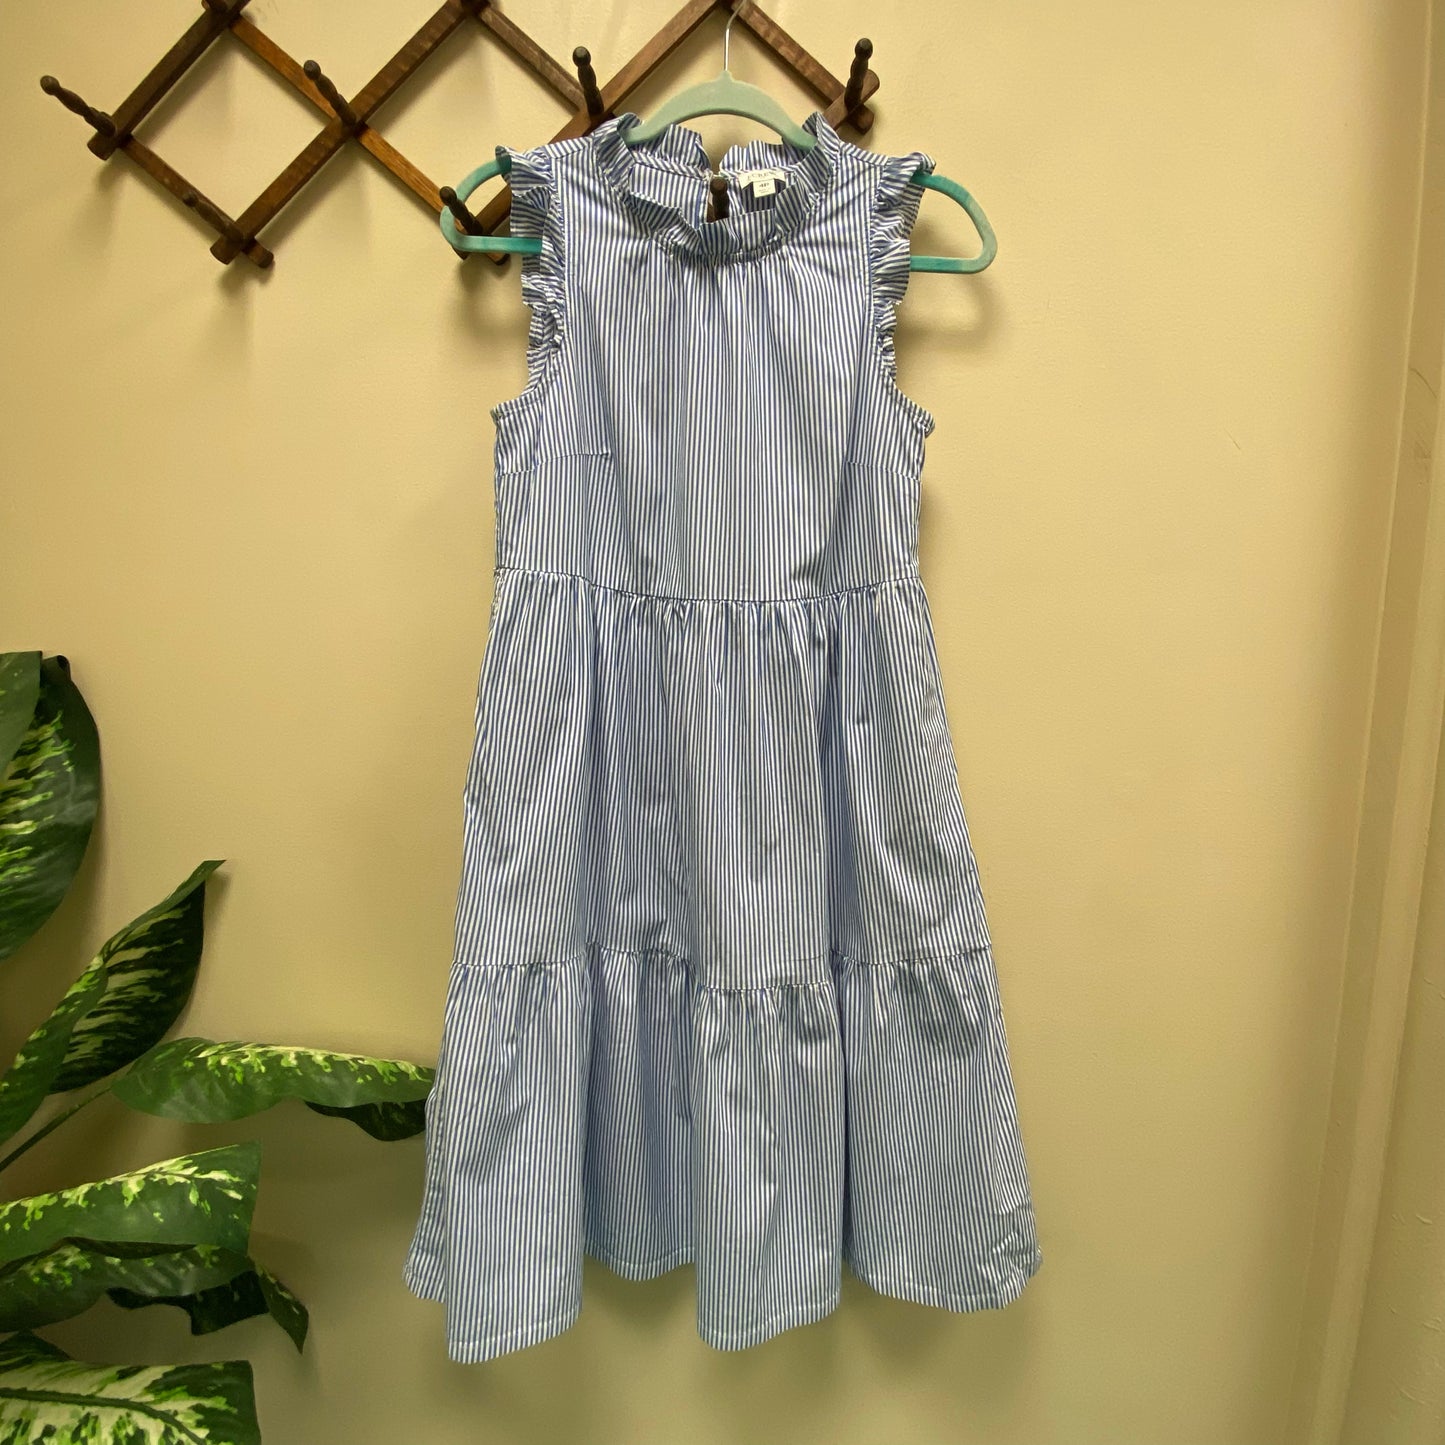 J.Crew Striped Dress w/Pockets - Size 4 Petite